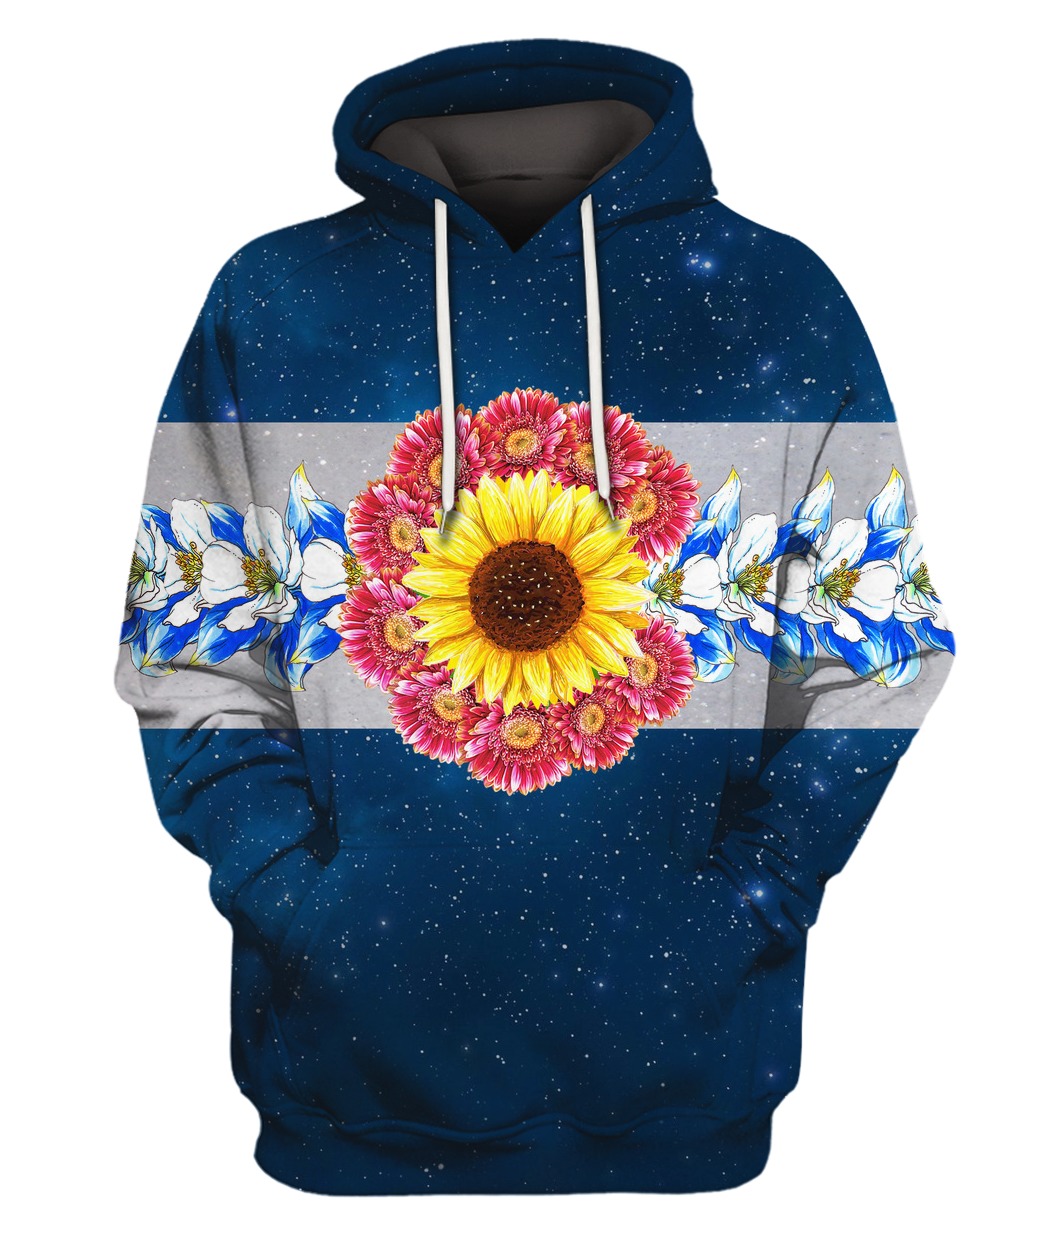 Flower galaxy full printing hoodie